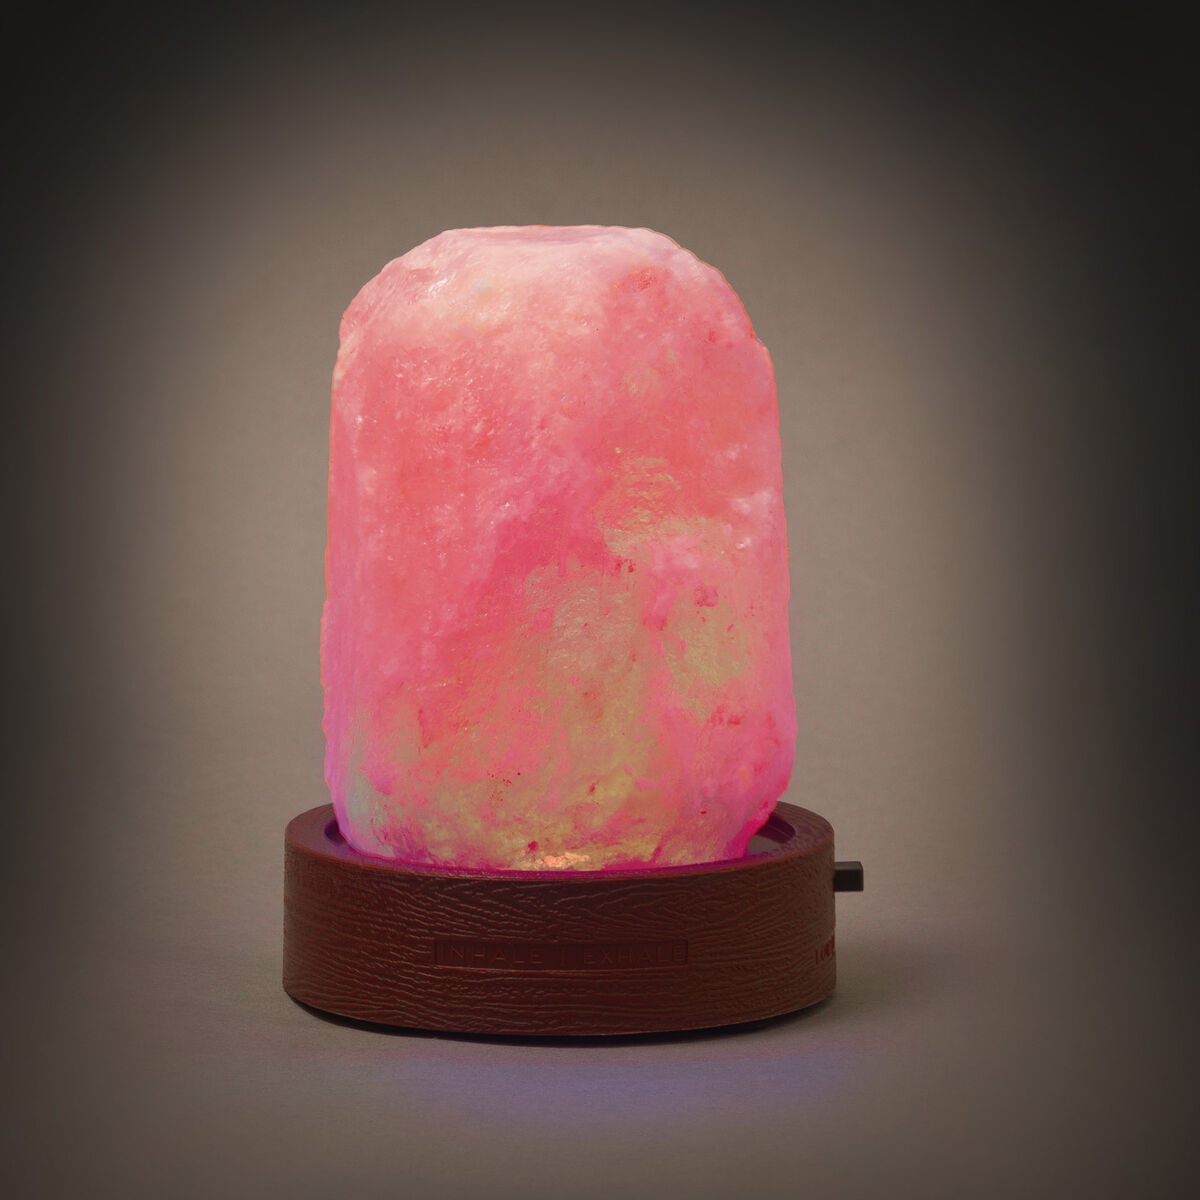 Legami Mini Himalayan Salt Lamp